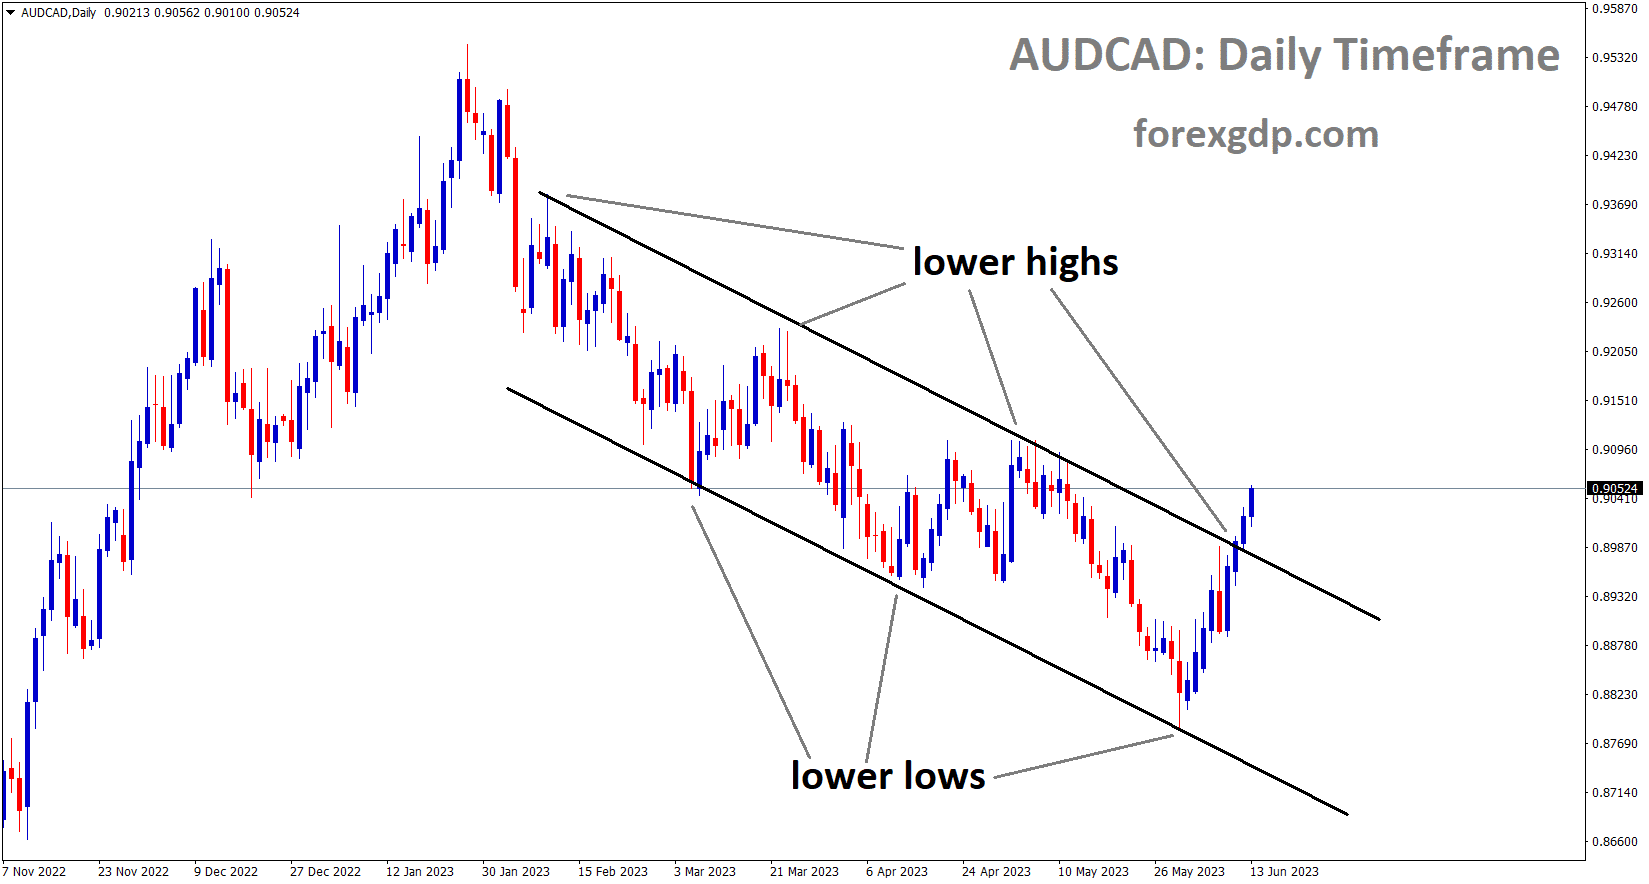 AUDCAD has broken the Descending channel in upside.